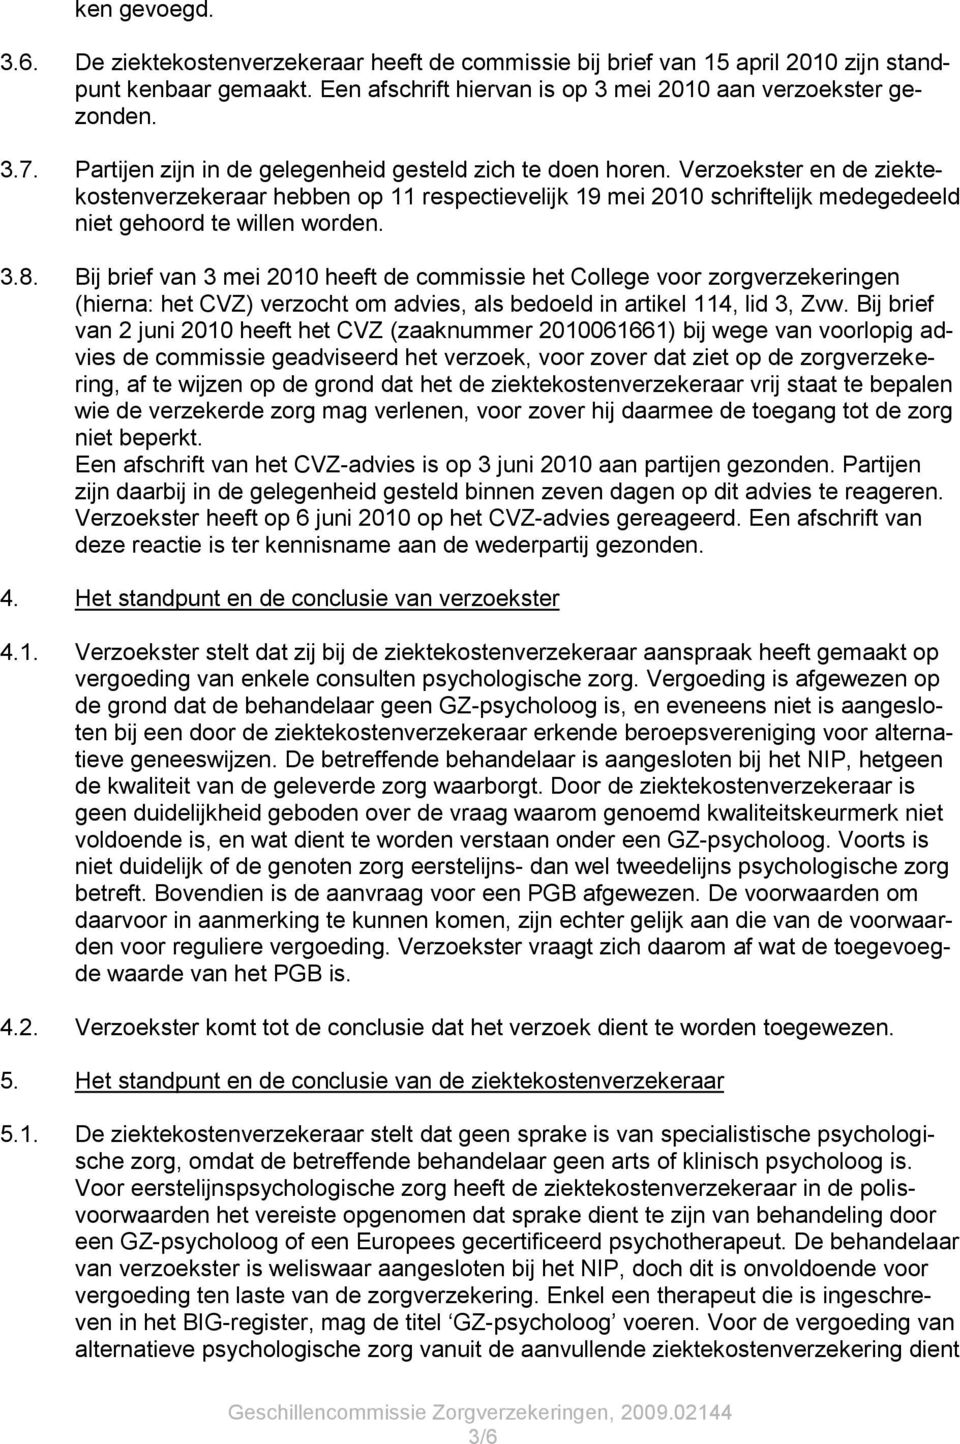 3.8. Bij brief van 3 mei 2010 heeft de commissie het College voor zorgverzekeringen (hierna: het CVZ) verzocht om advies, als bedoeld in artikel 114, lid 3, Zvw.